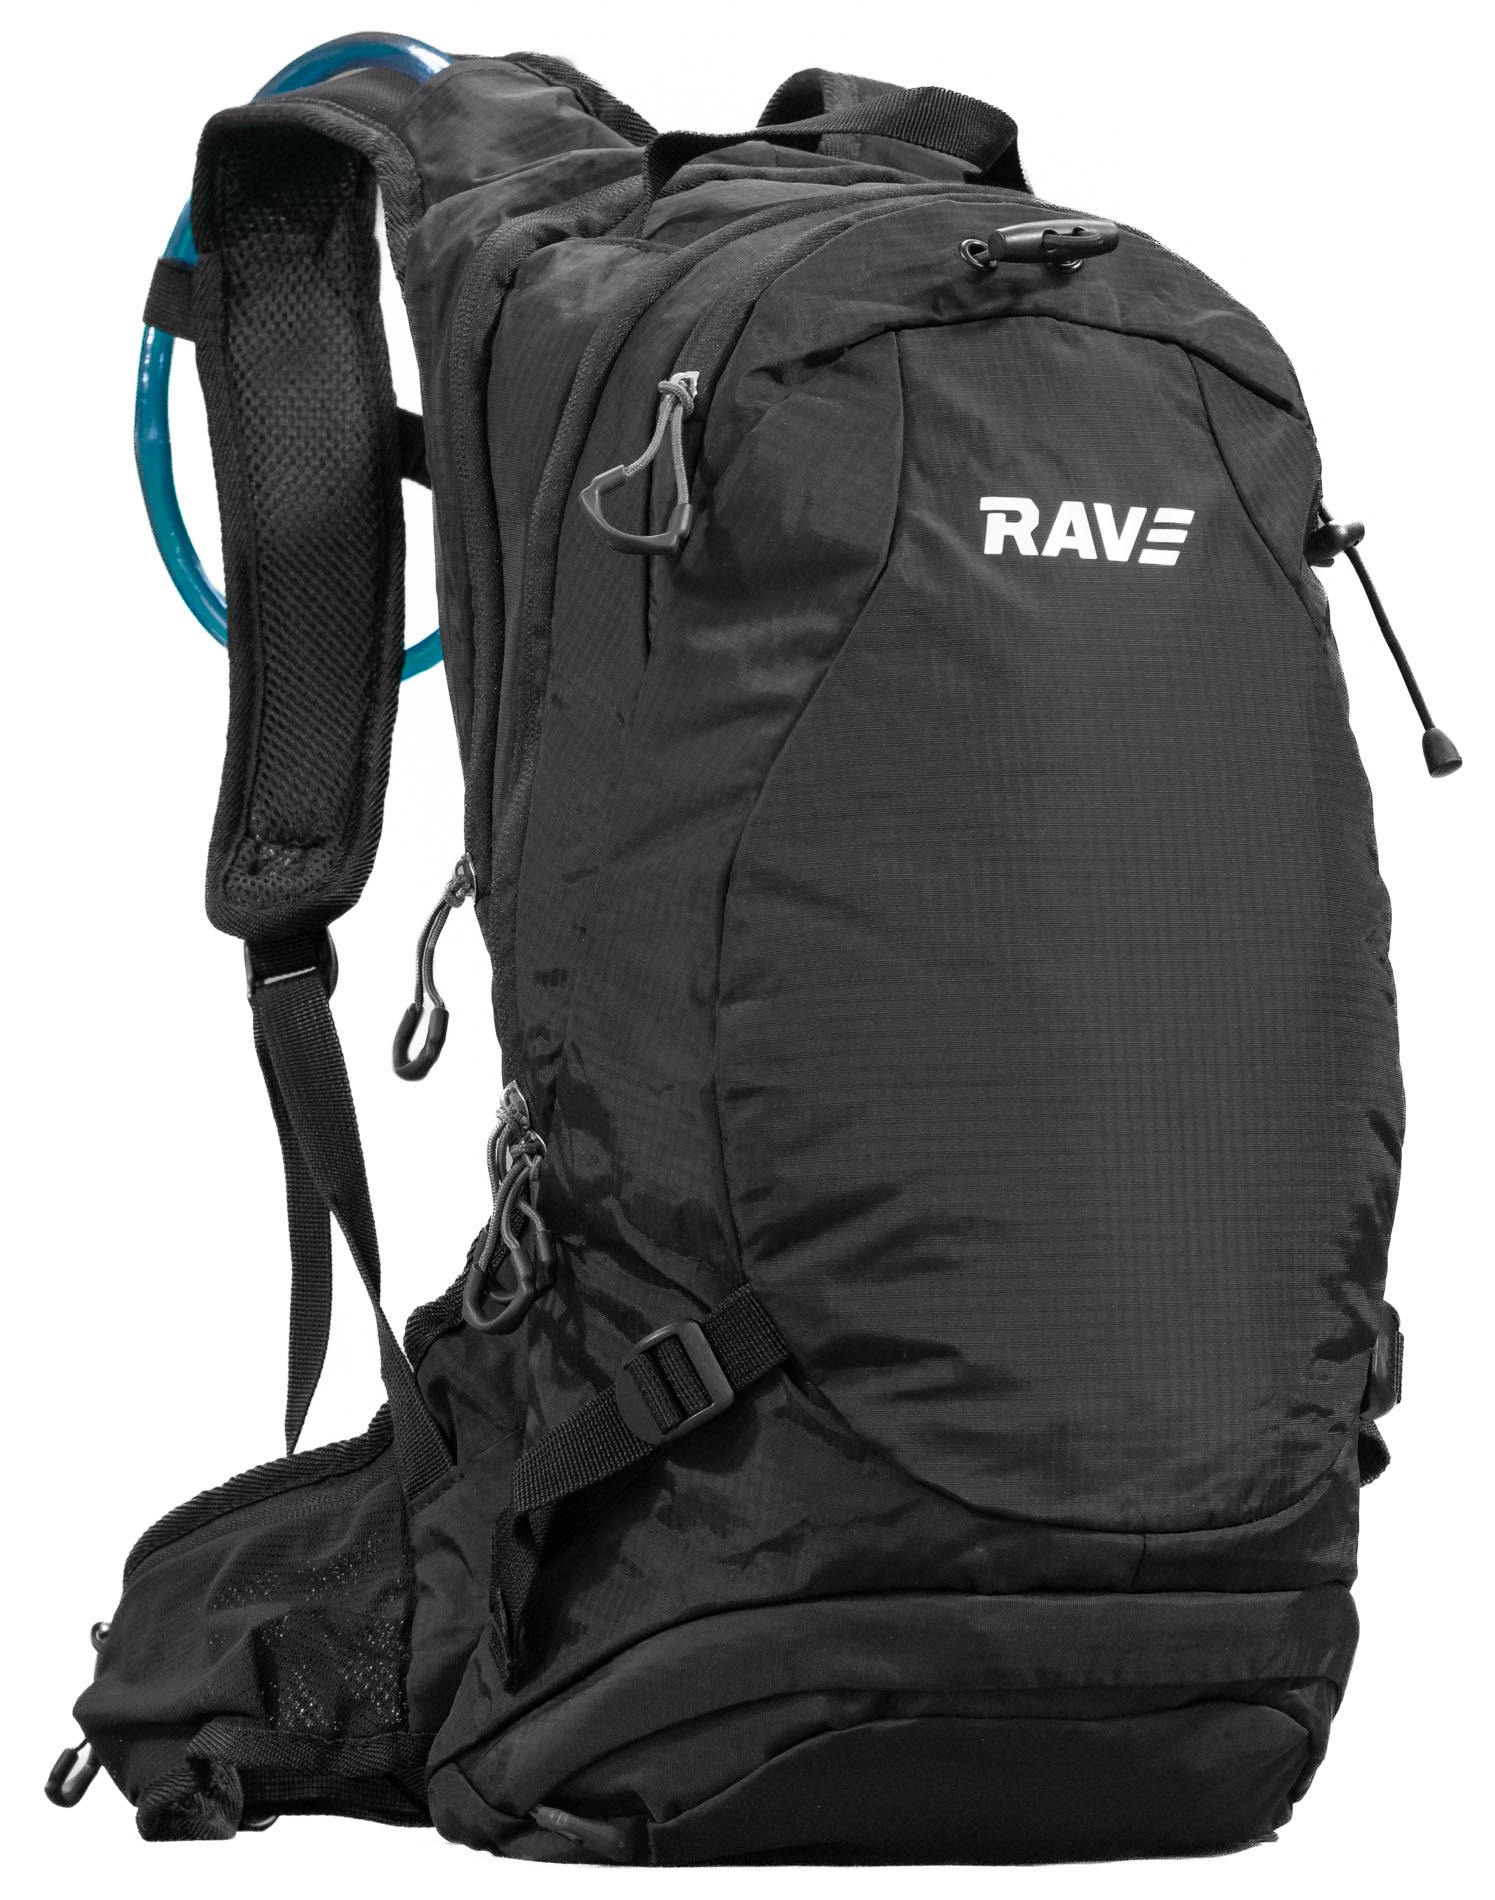 RAVE Bike & Outdoor Backpack incl. 2 liter hydration bladder